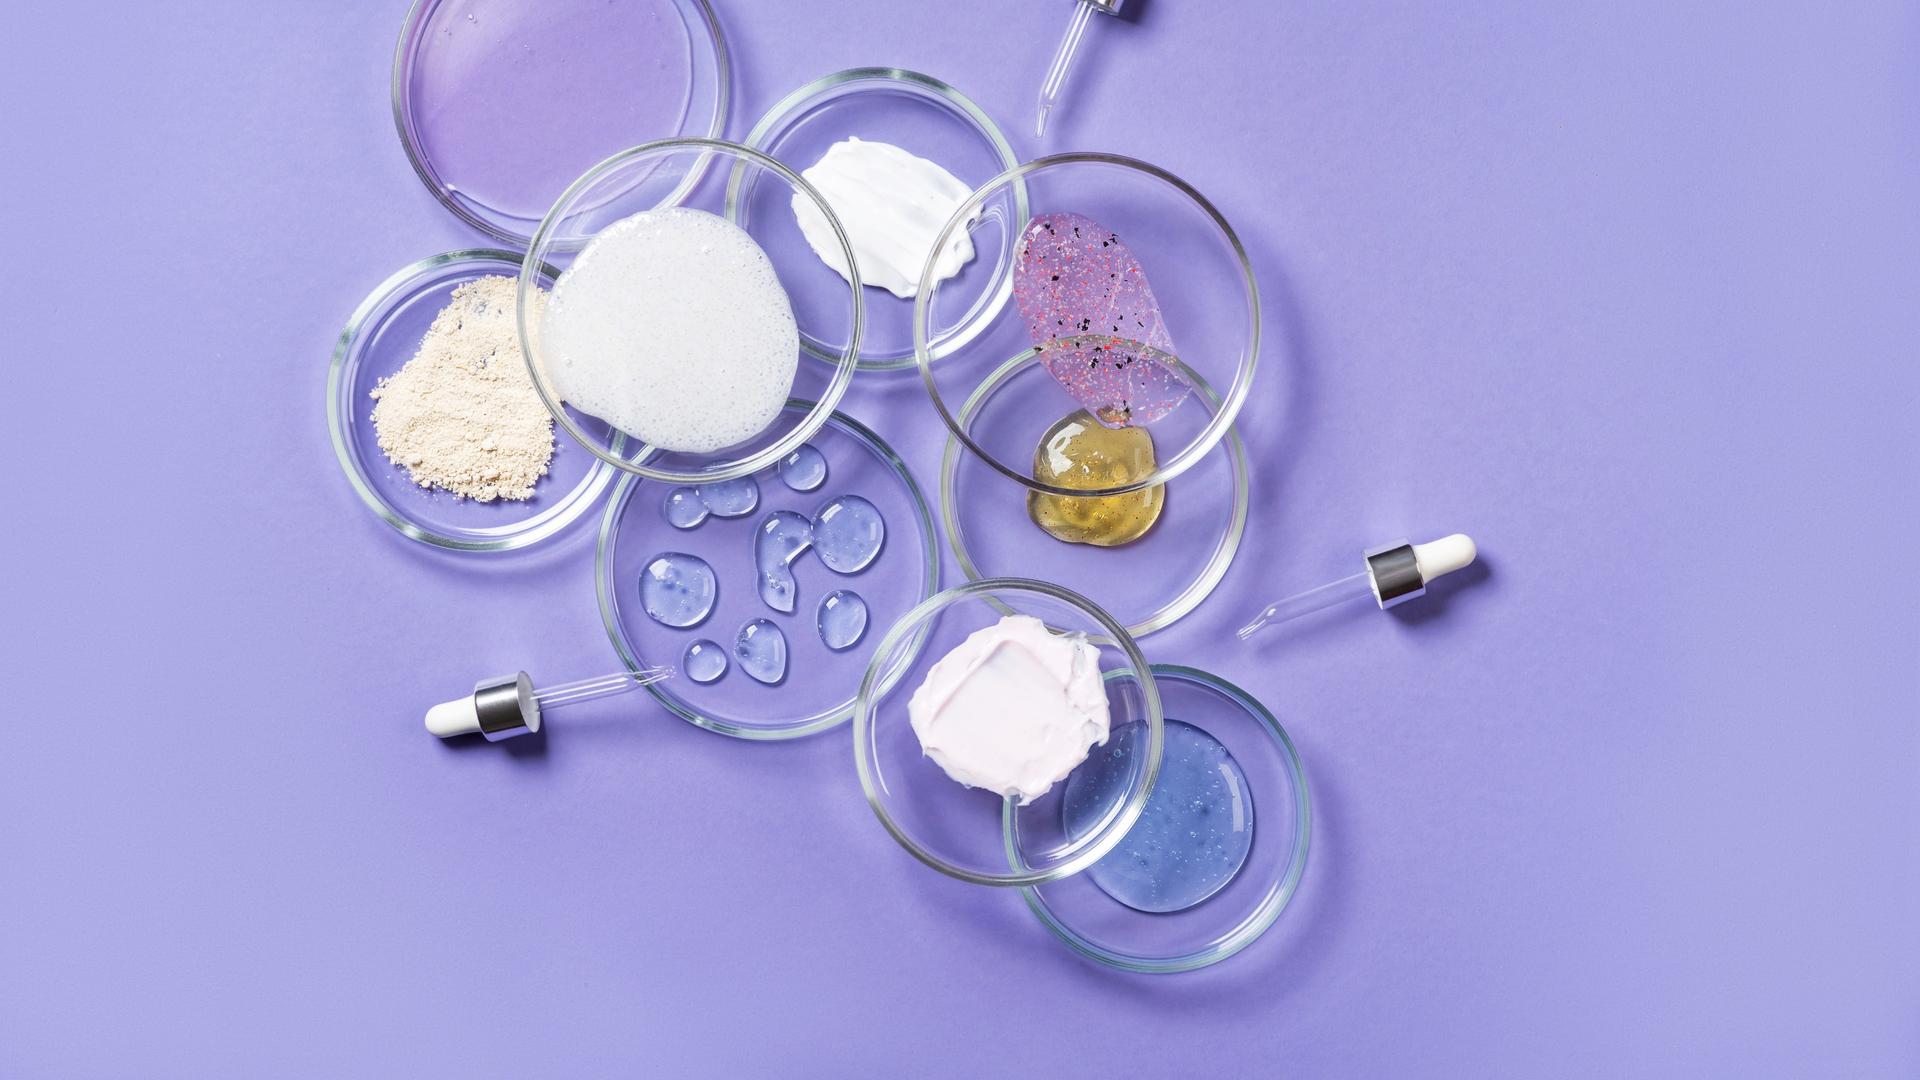 Auf einem violetten Untergrund stehen mehrere Petrischalen in denen verschiedene Kosmetika enthalten sind.